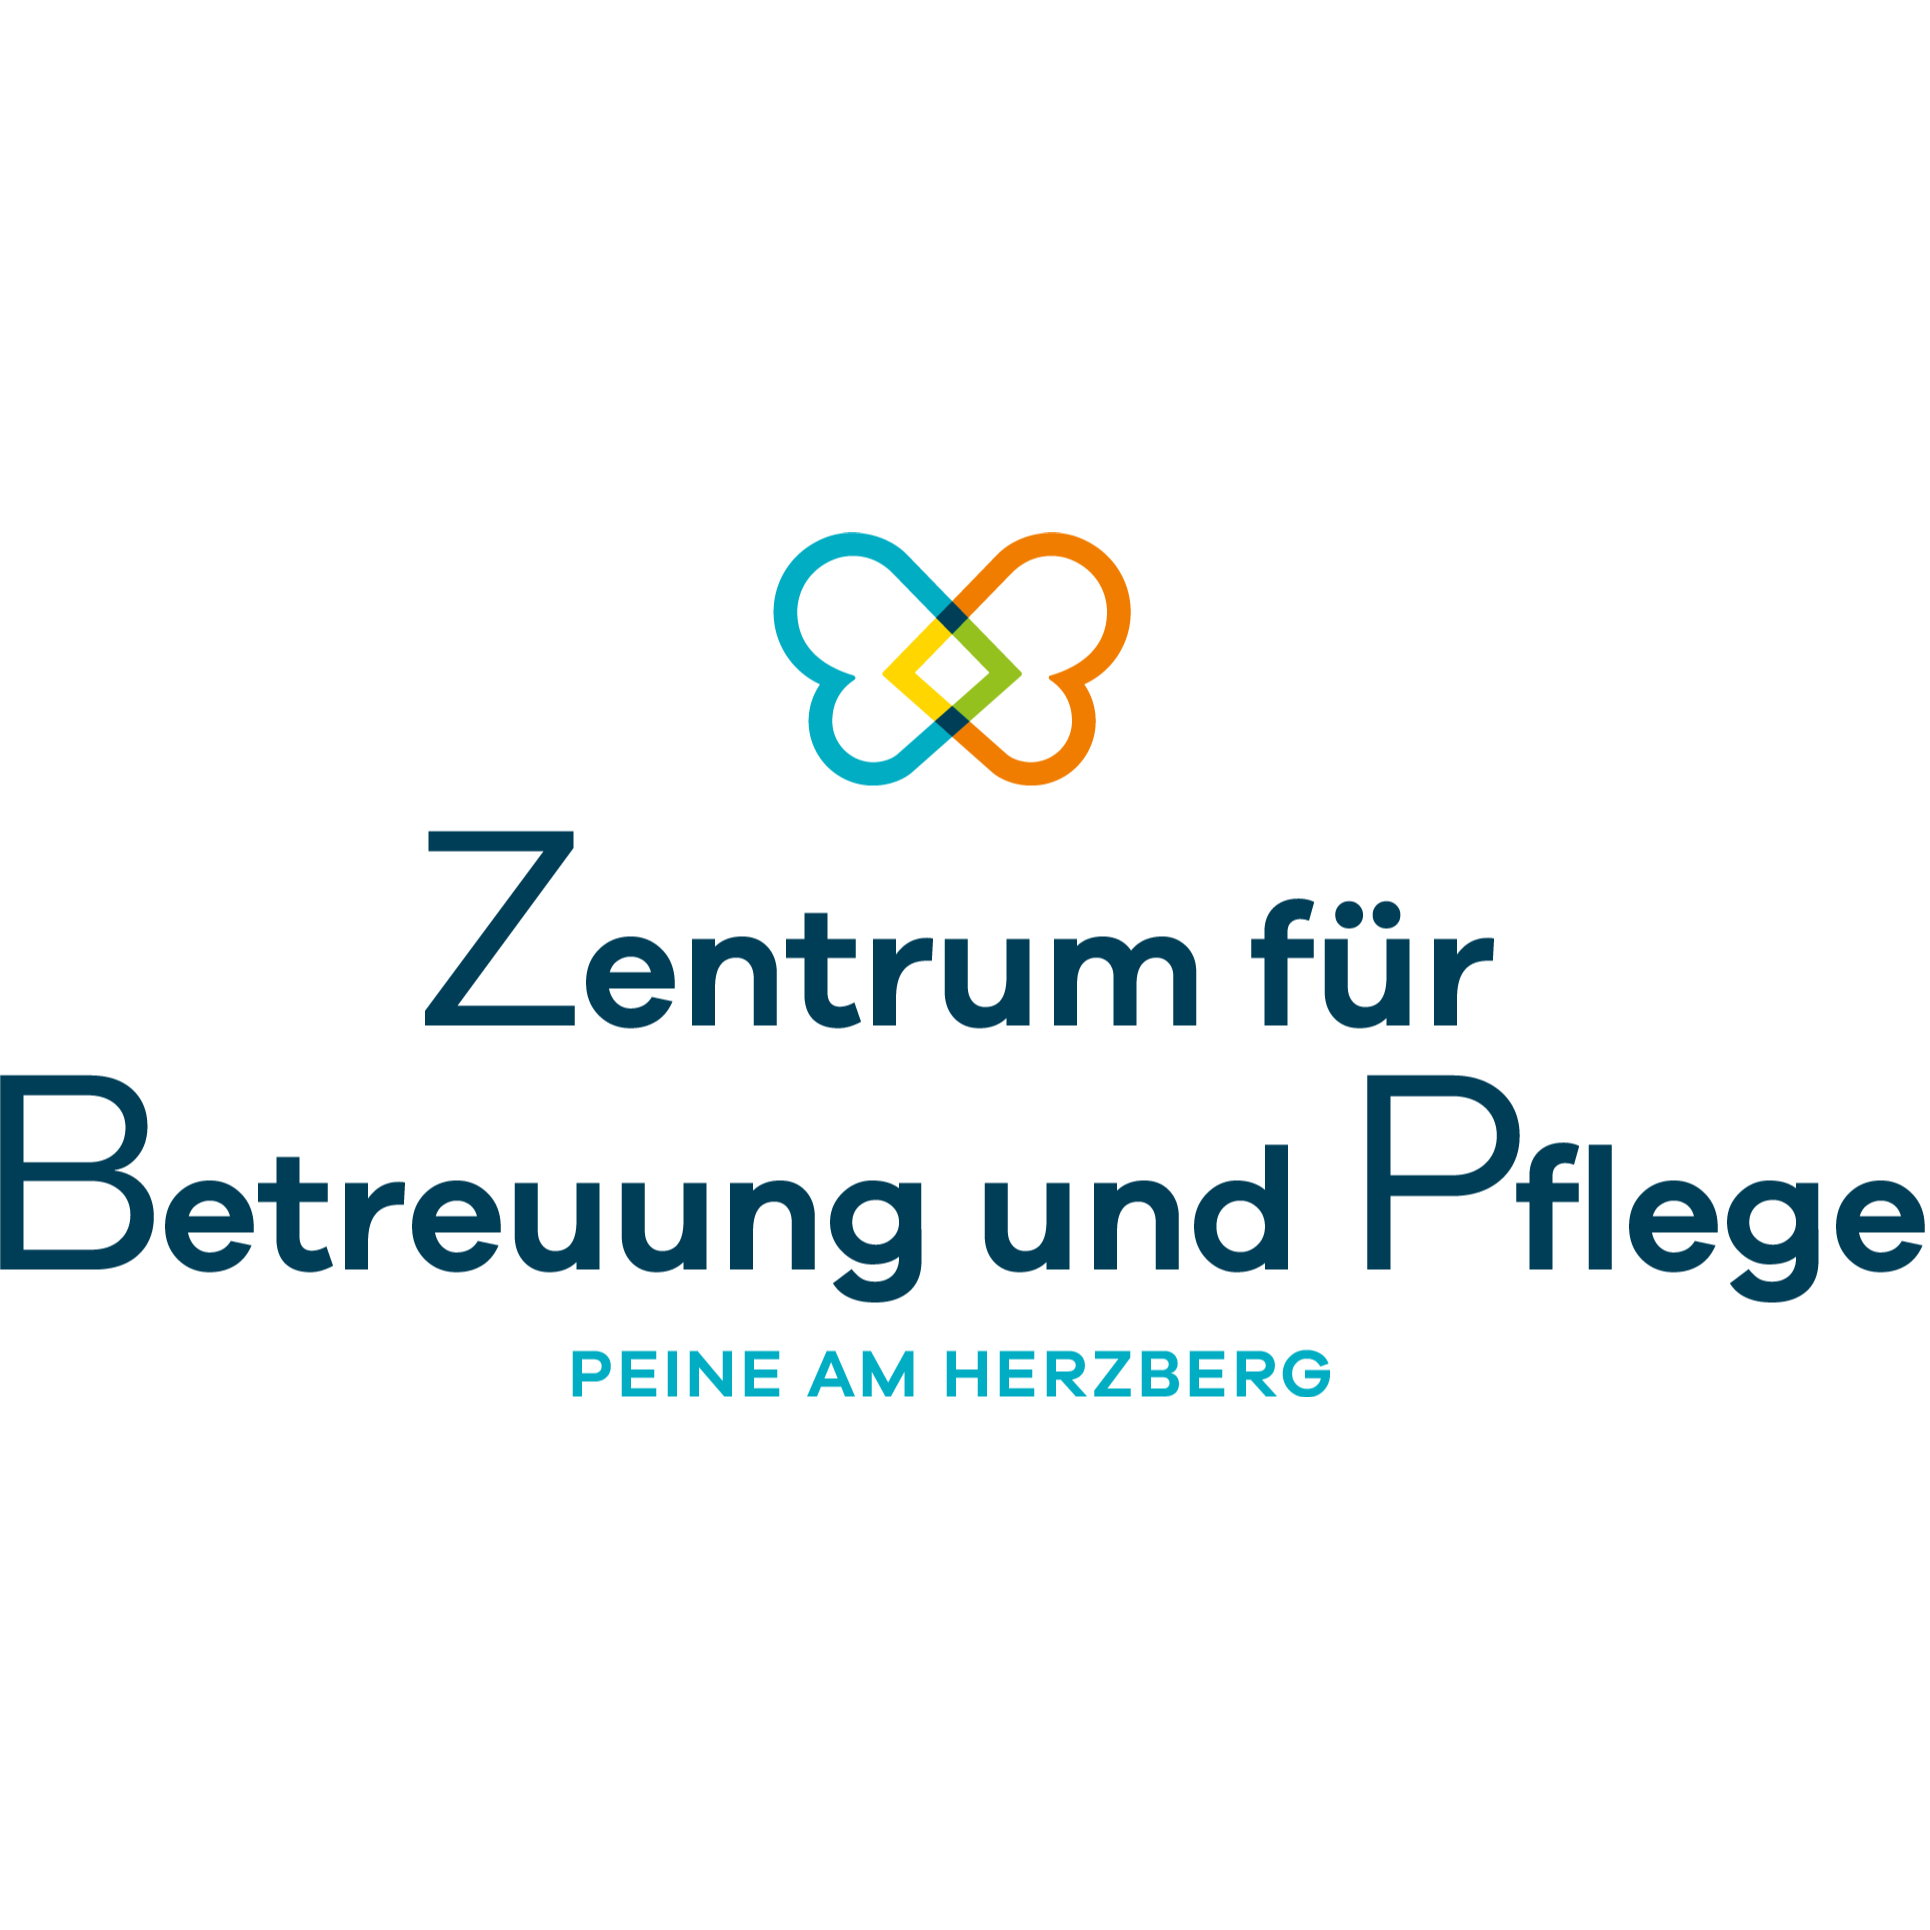 Zentrum für Betreuung und Pflege Peine am Herzberg Logo